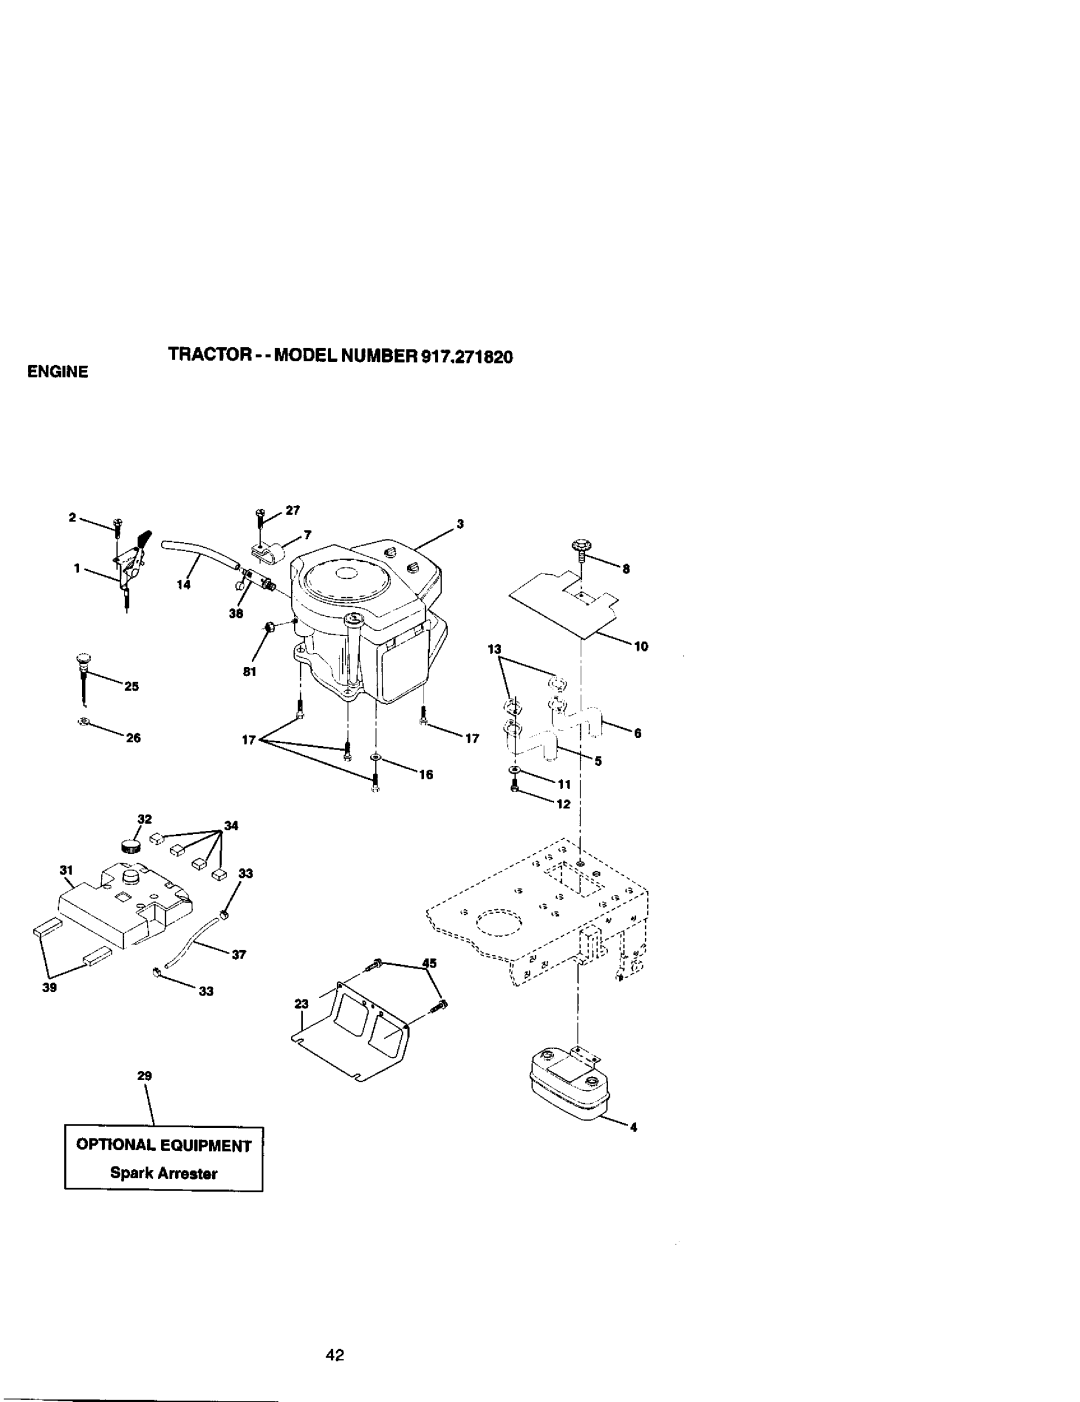 Craftsman 917.27182 manual TRACTOR - - MODEL NUMBER 917,271820, Engine, OPTIONAL EQUIPMENT Spark Arrester 